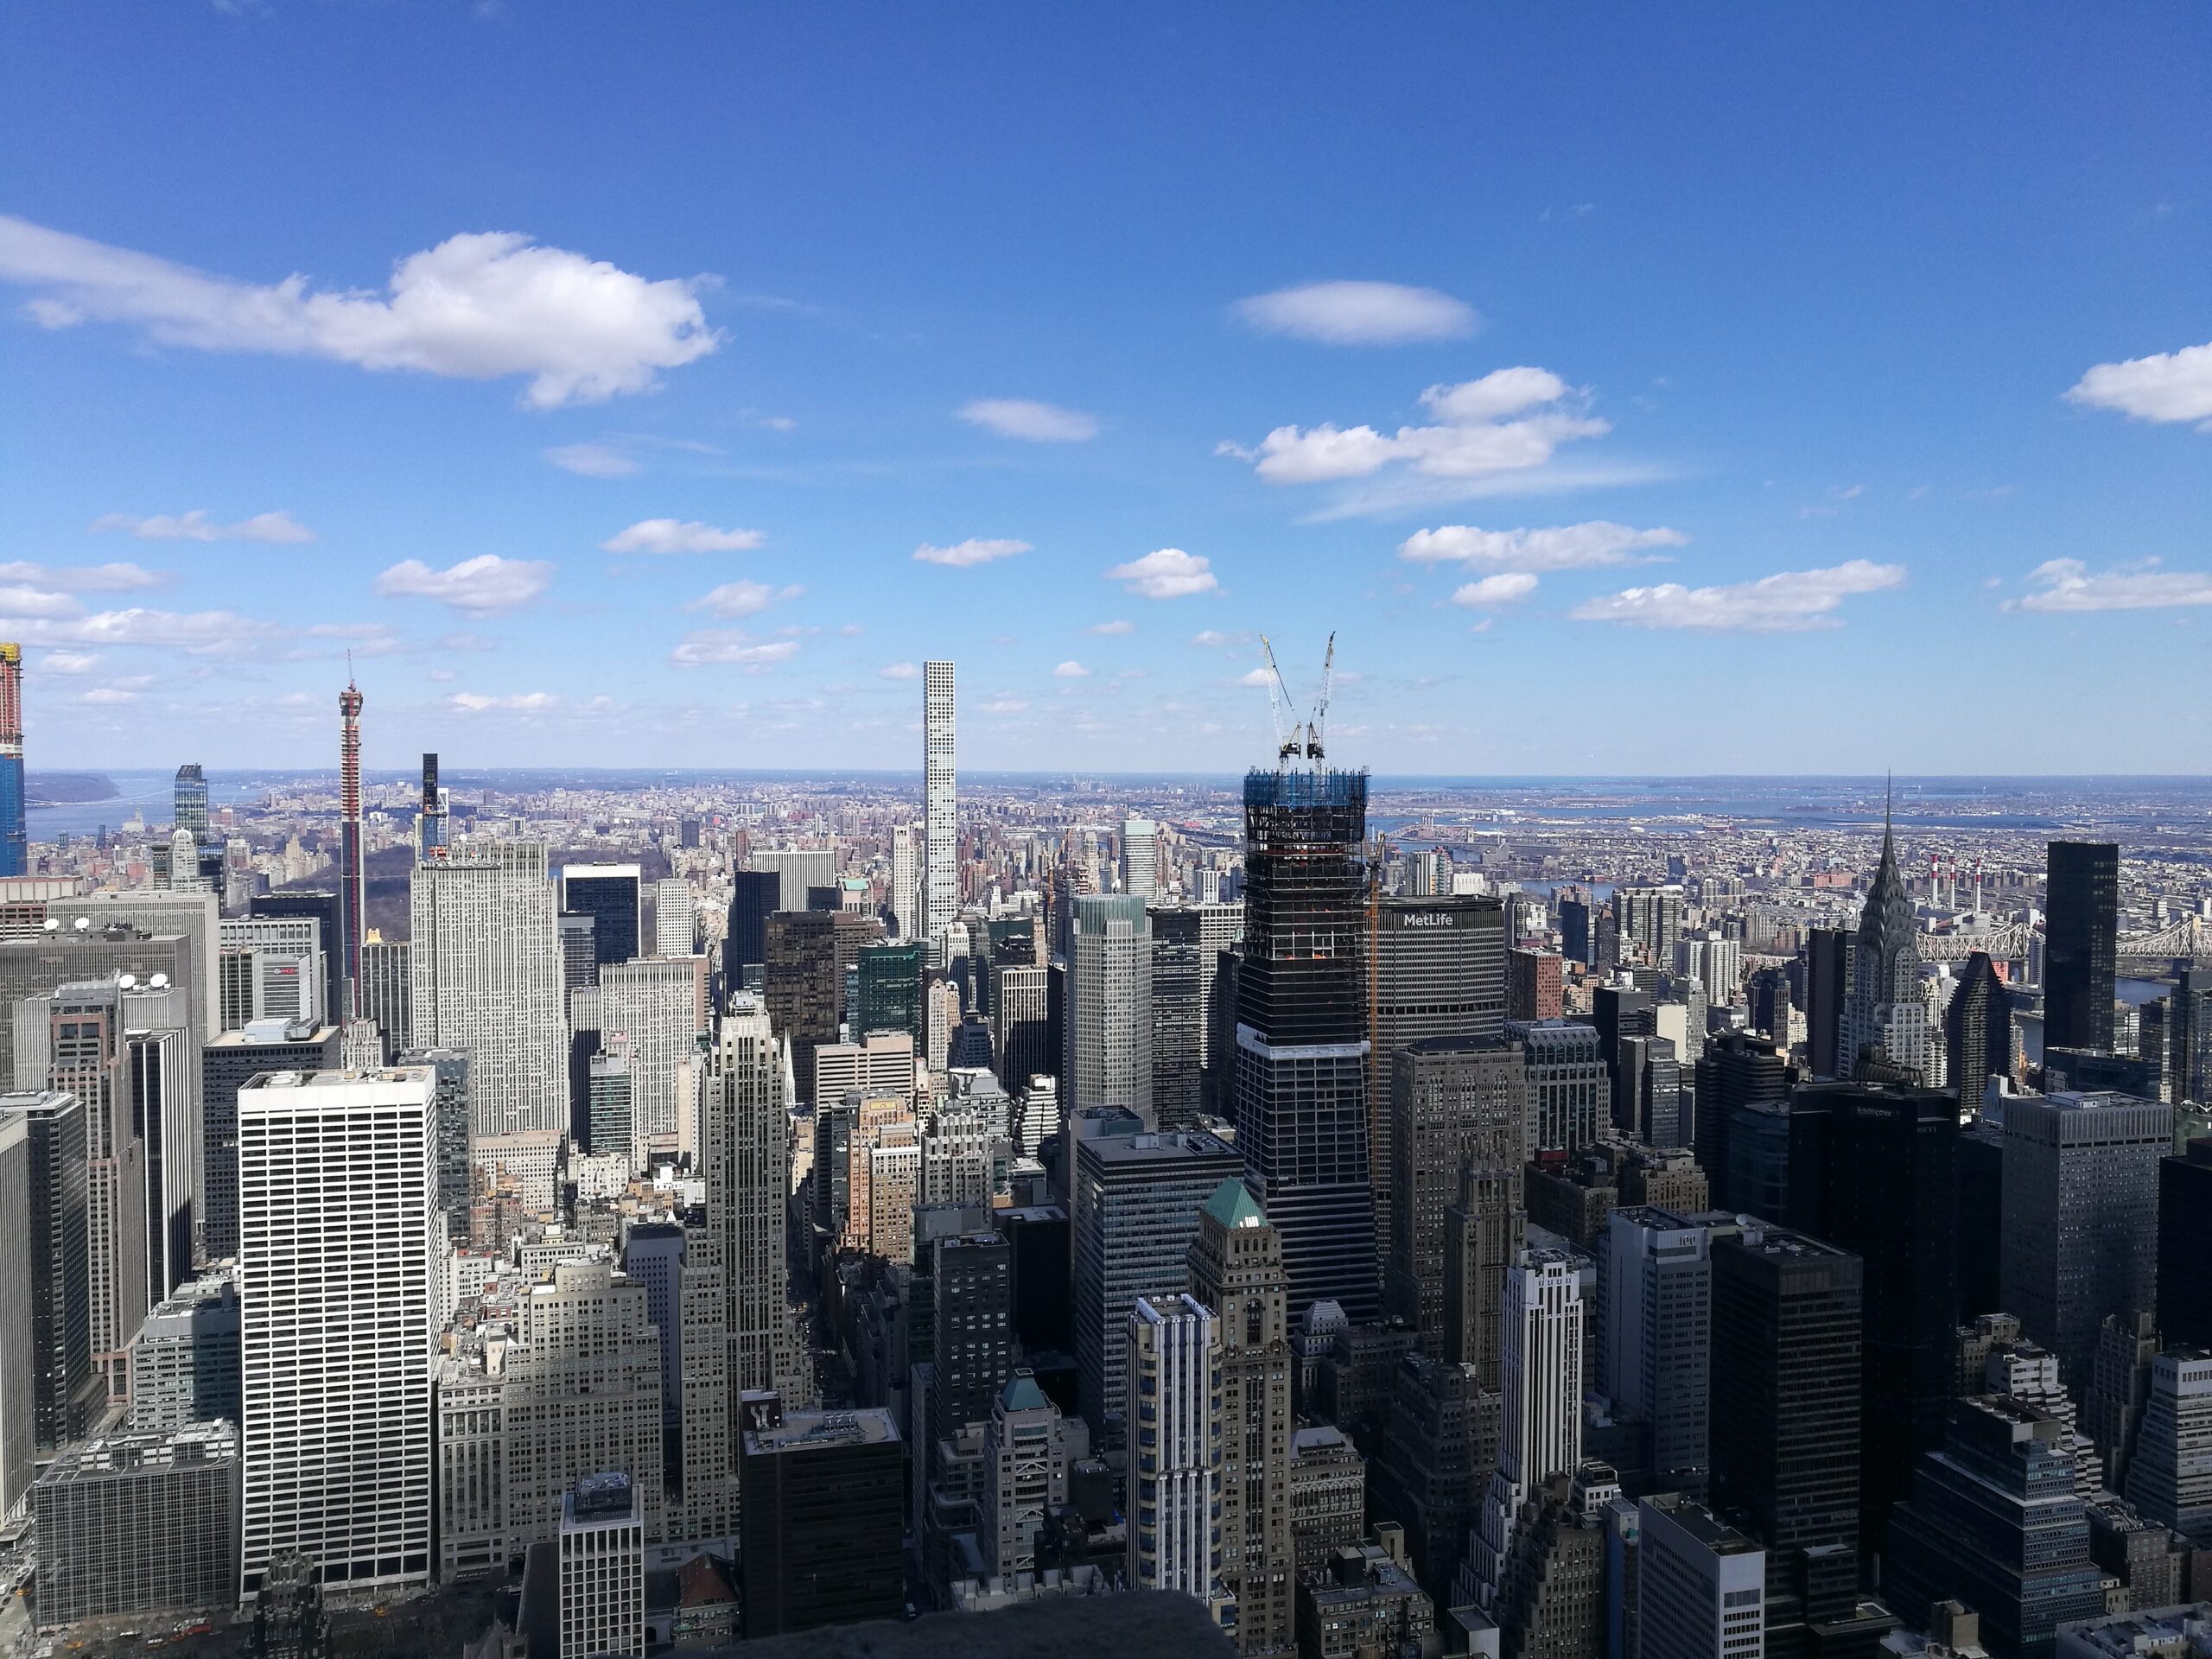 Ein Ausblick über die Wolkenkratzer von New York City unter blauem Himmel, aufgenommen vom Empire State Building aus